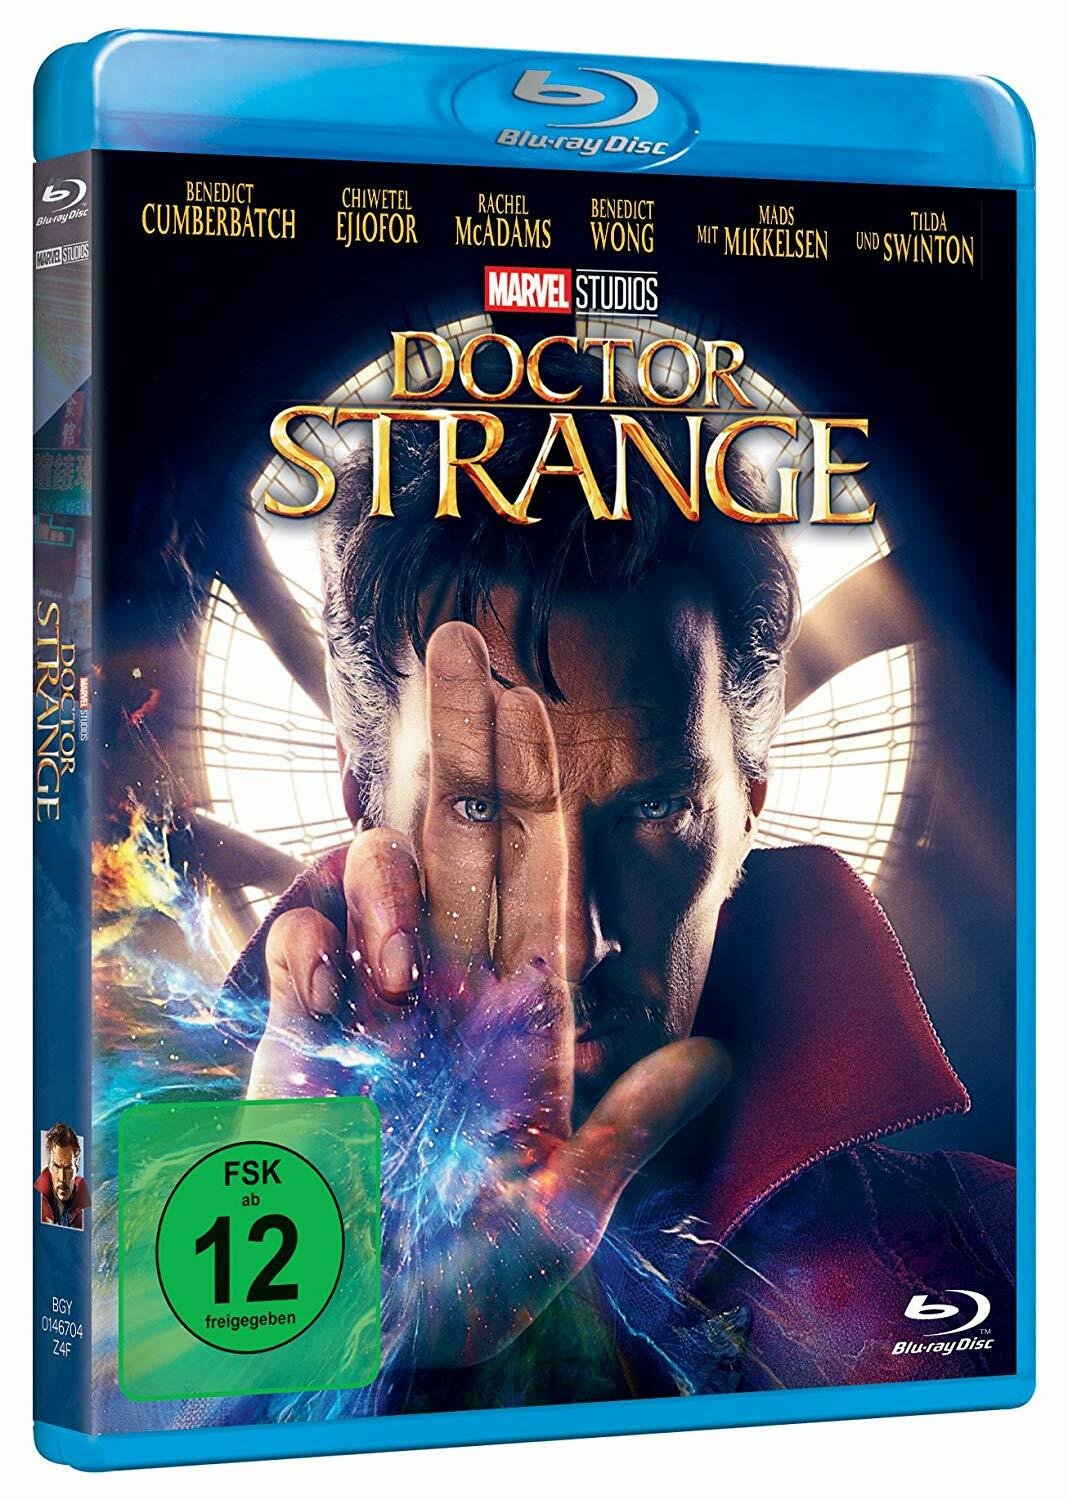 Benedict Cumberbatch nella copertina del Blu-ray di Doctor Strange